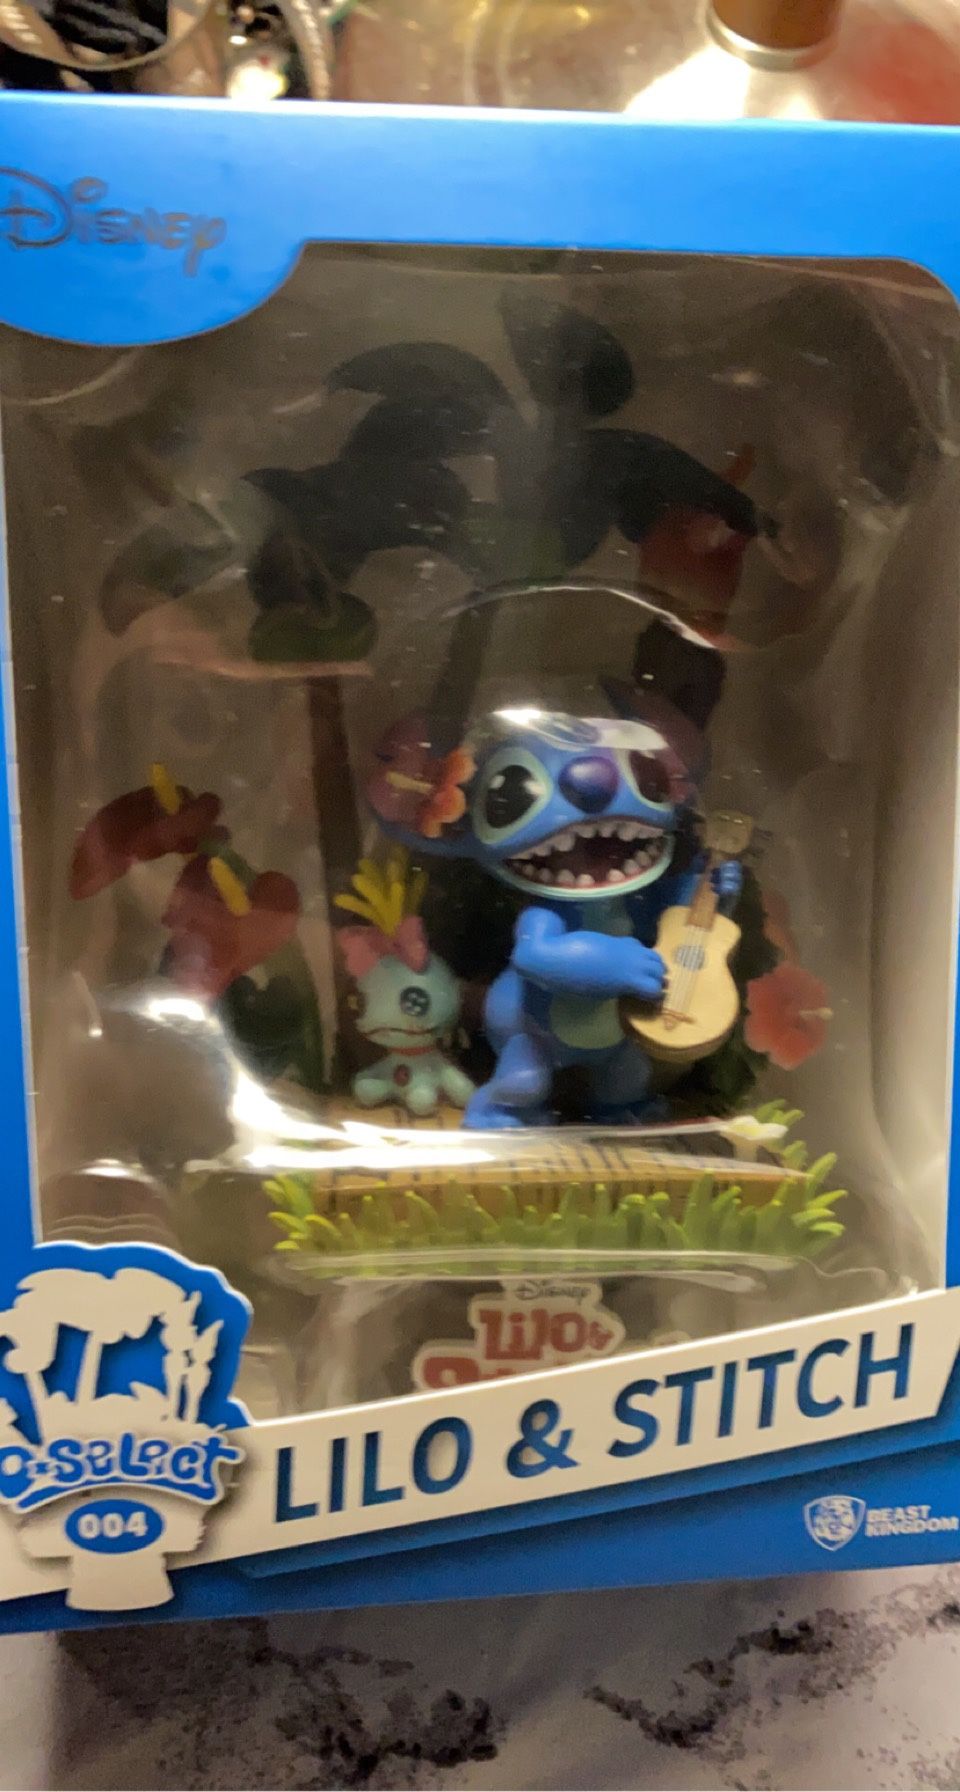 Lilo & Stitch figurine